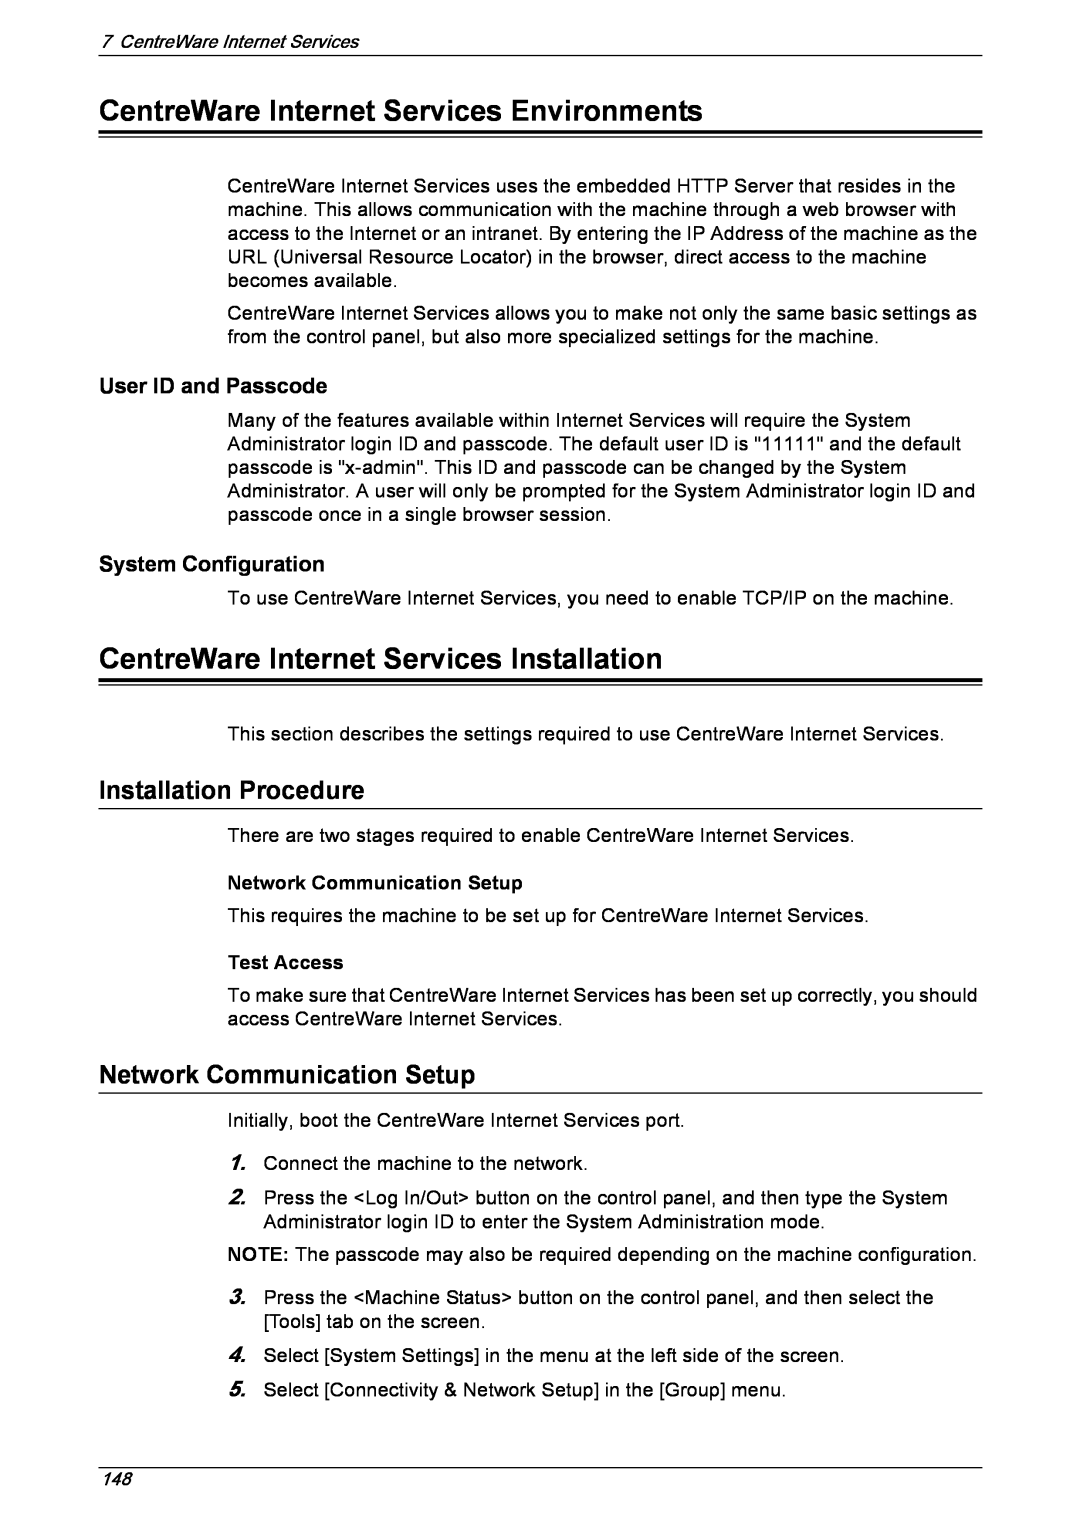 Xerox 5222 CentreWare Internet Services Environments, CentreWare Internet Services Installation, Installation Procedure 